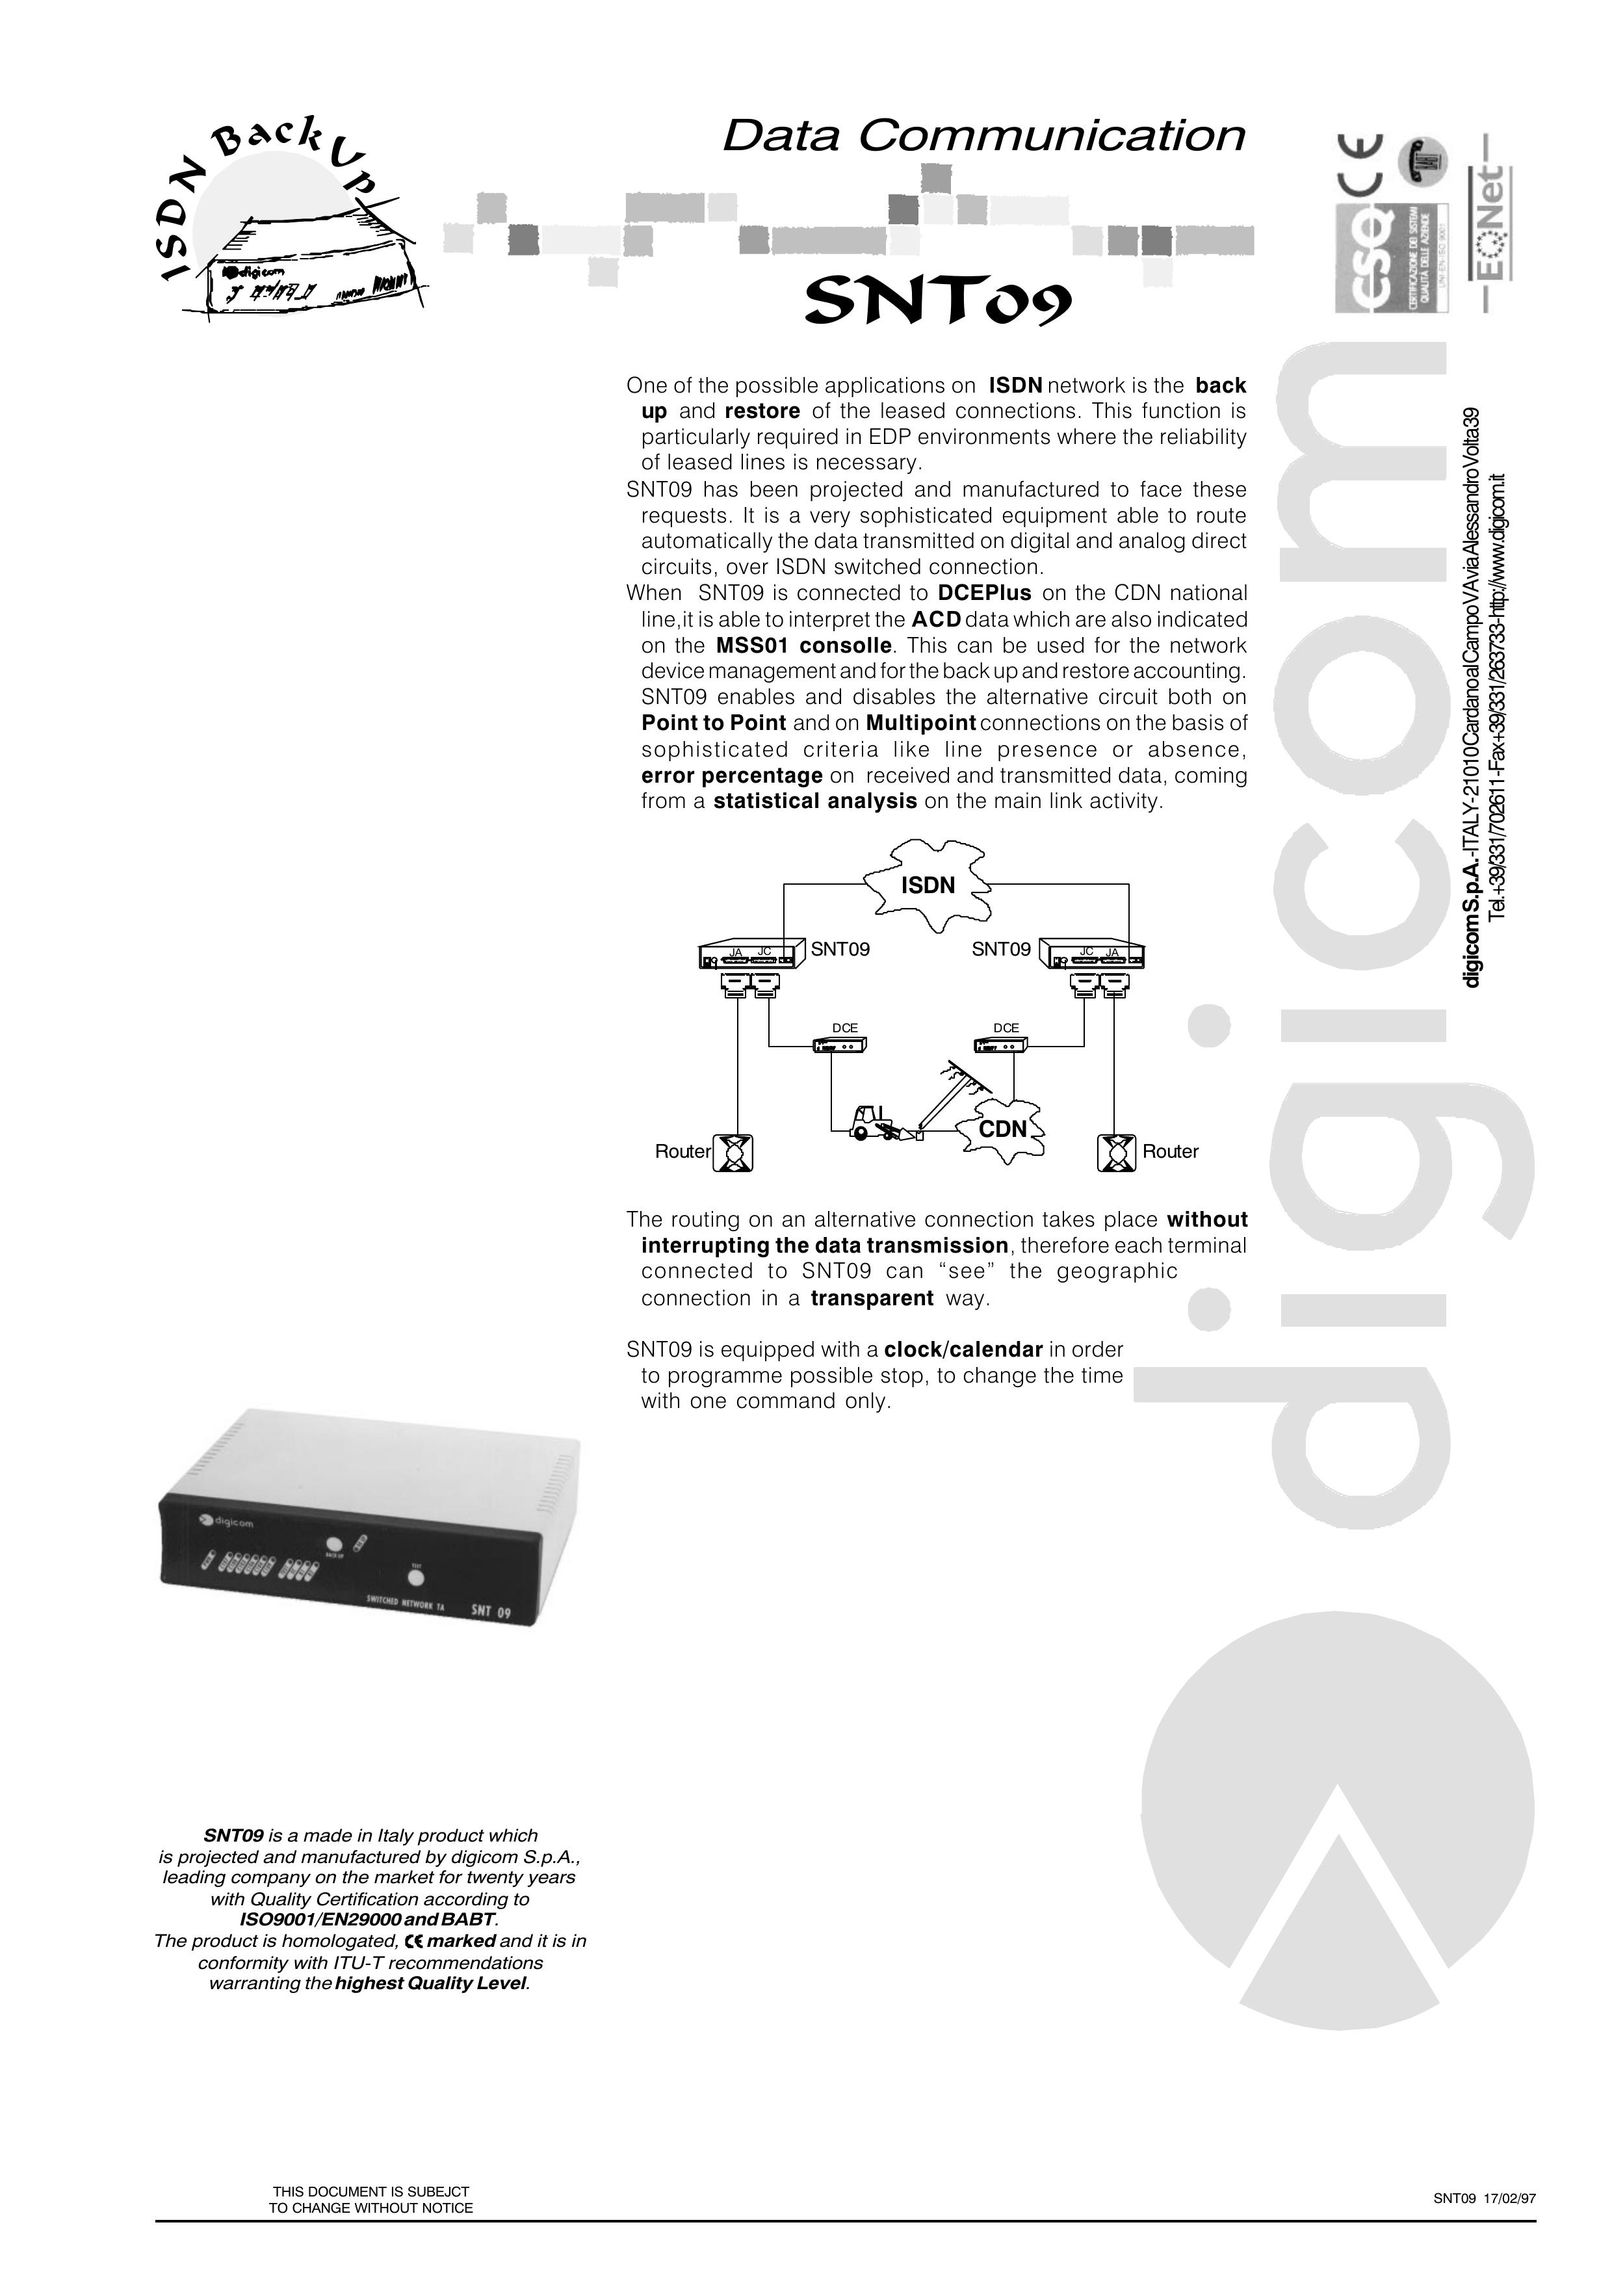 Digicom SNT09 Network Card User Manual